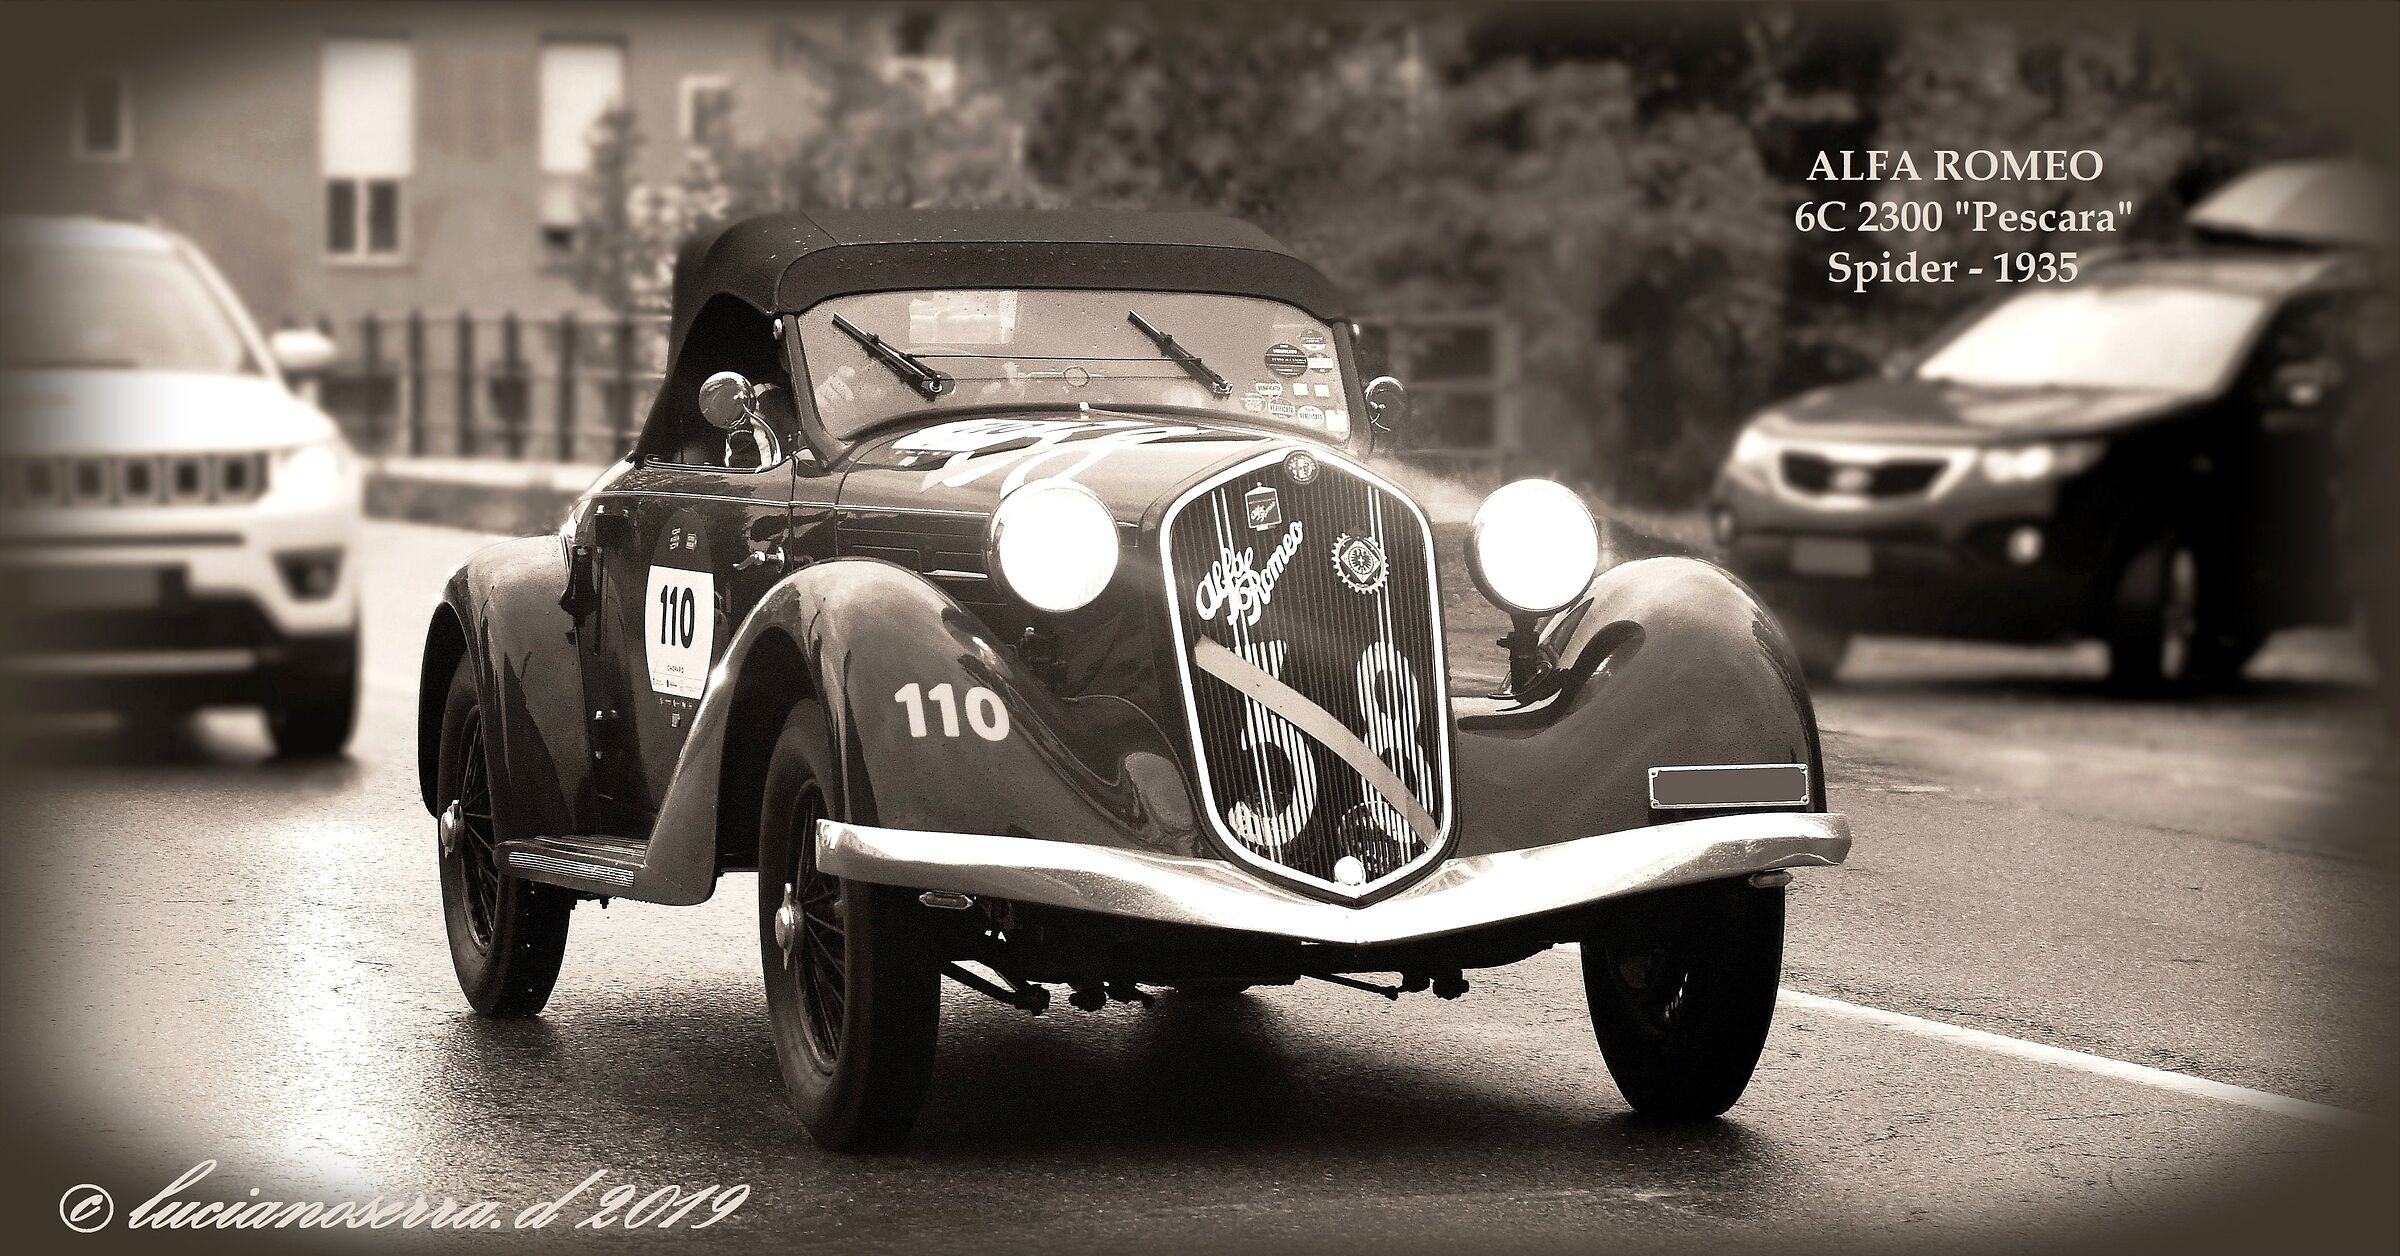 Alfa Romeo 6C 2300 "Pescara" Spider-1935...